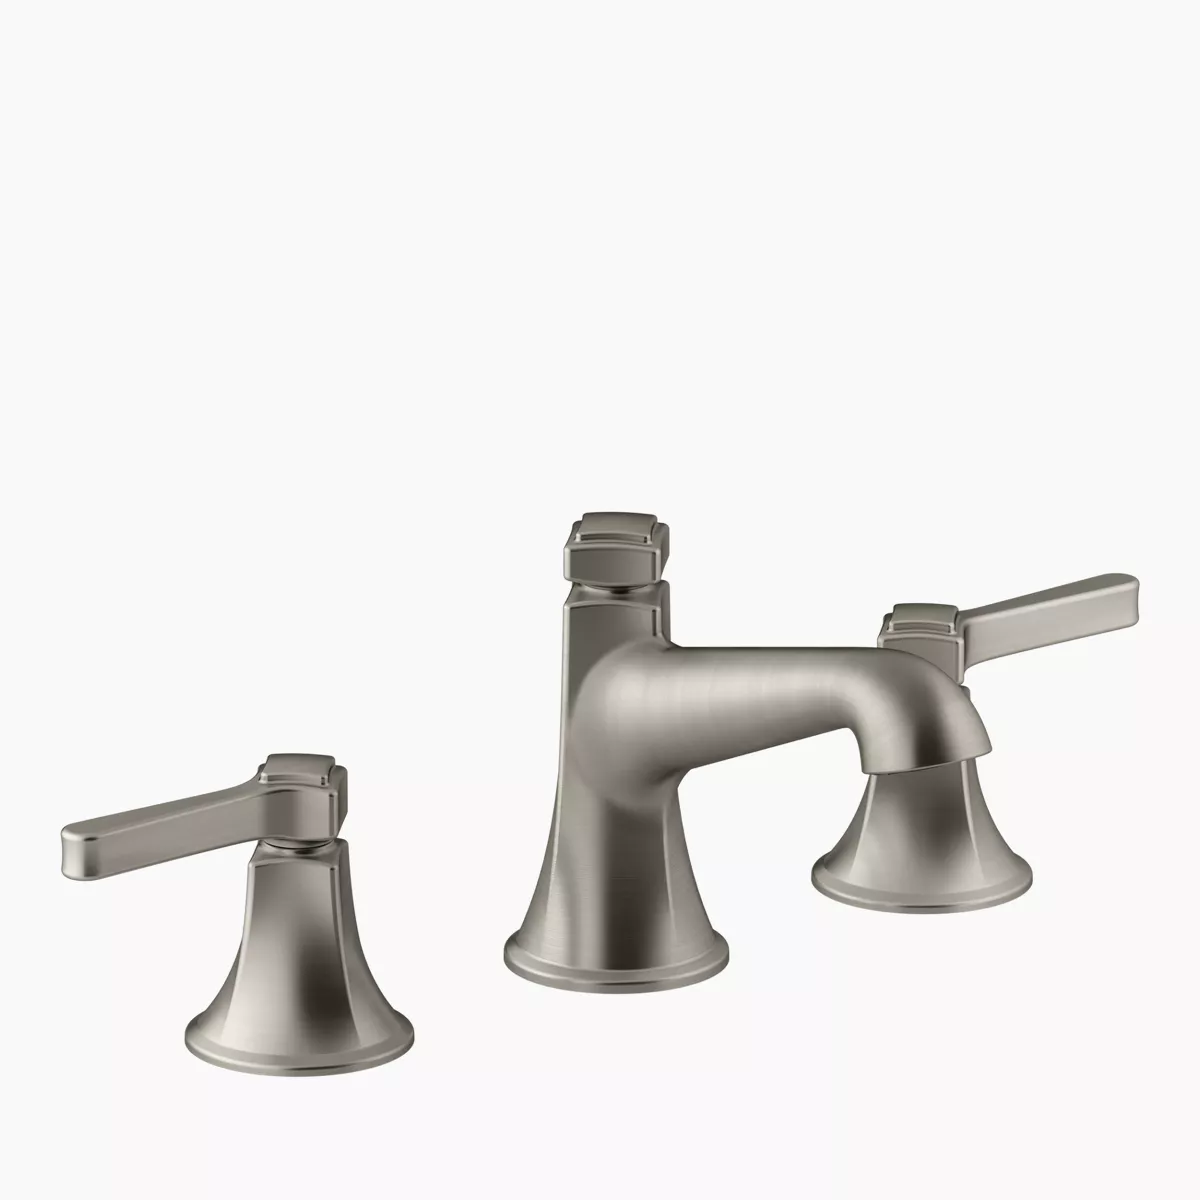 Kohler Artifacts Pull-Down Kitchen Sink Faucet, Vibrant Stainless, K-99259-VS